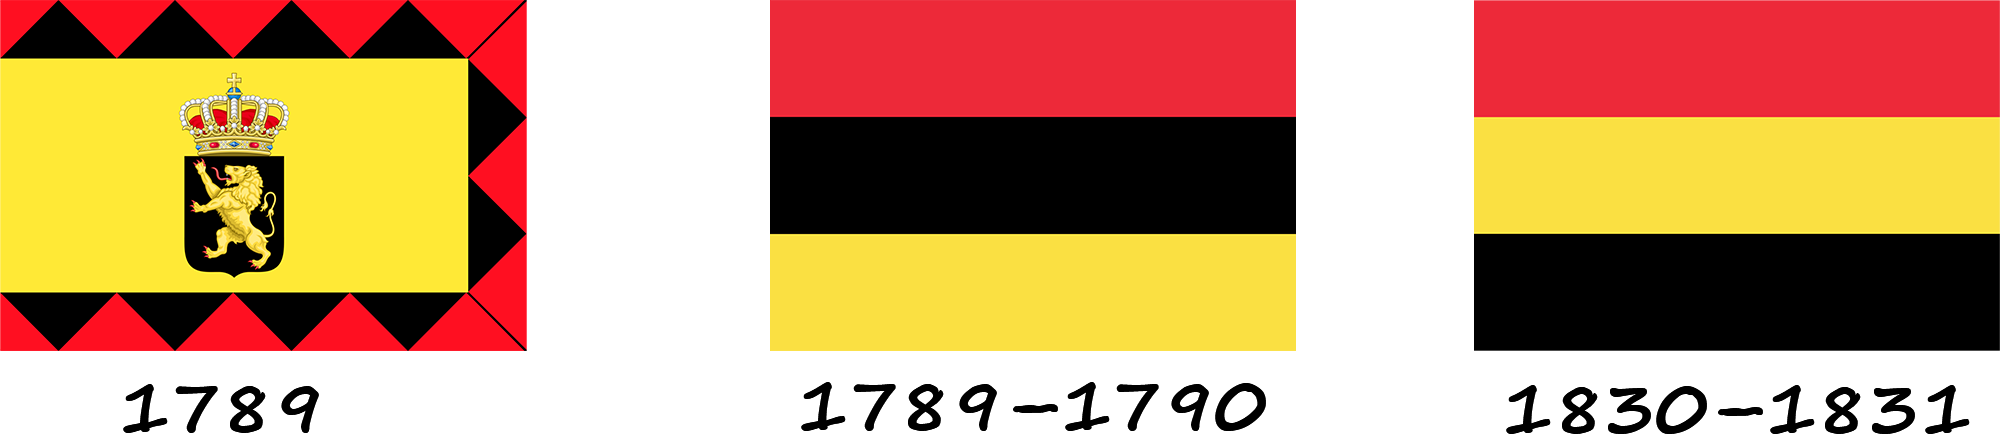 Historia de la bandera belga